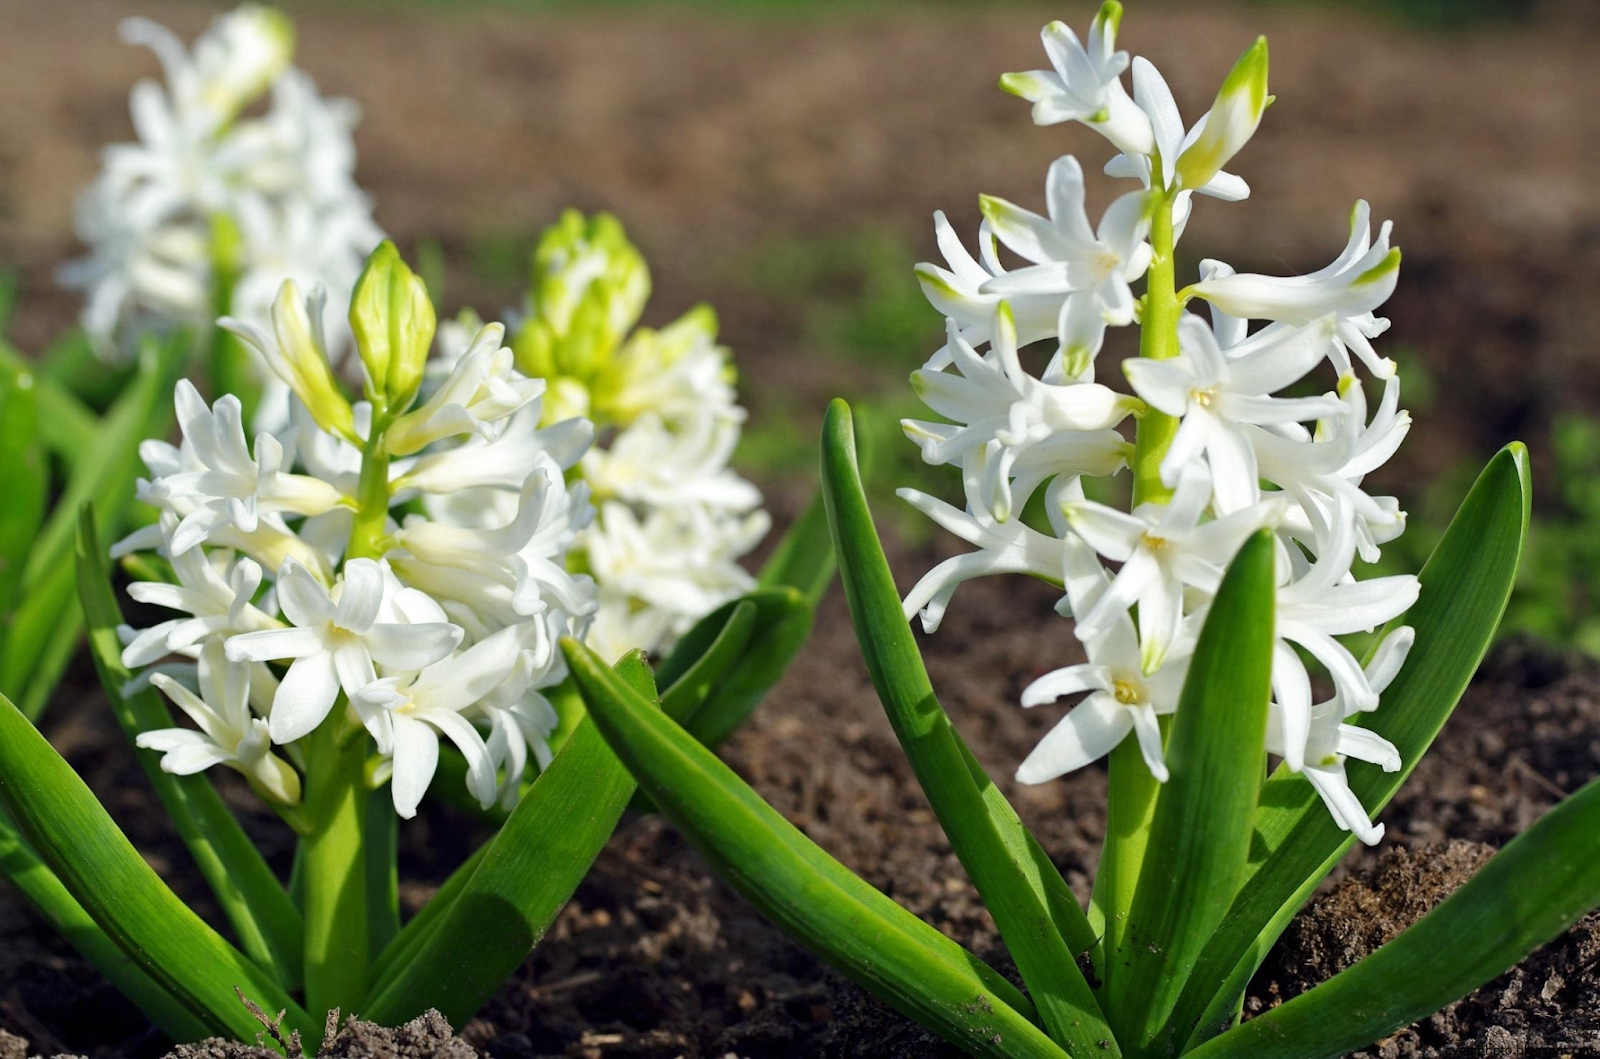 Название луковичных первоцветов. Цветок гиацинт белый. Весенние цветы луковичные гиацинт. Весенние первоцветы гиацинт. Луковичные первоцветы.